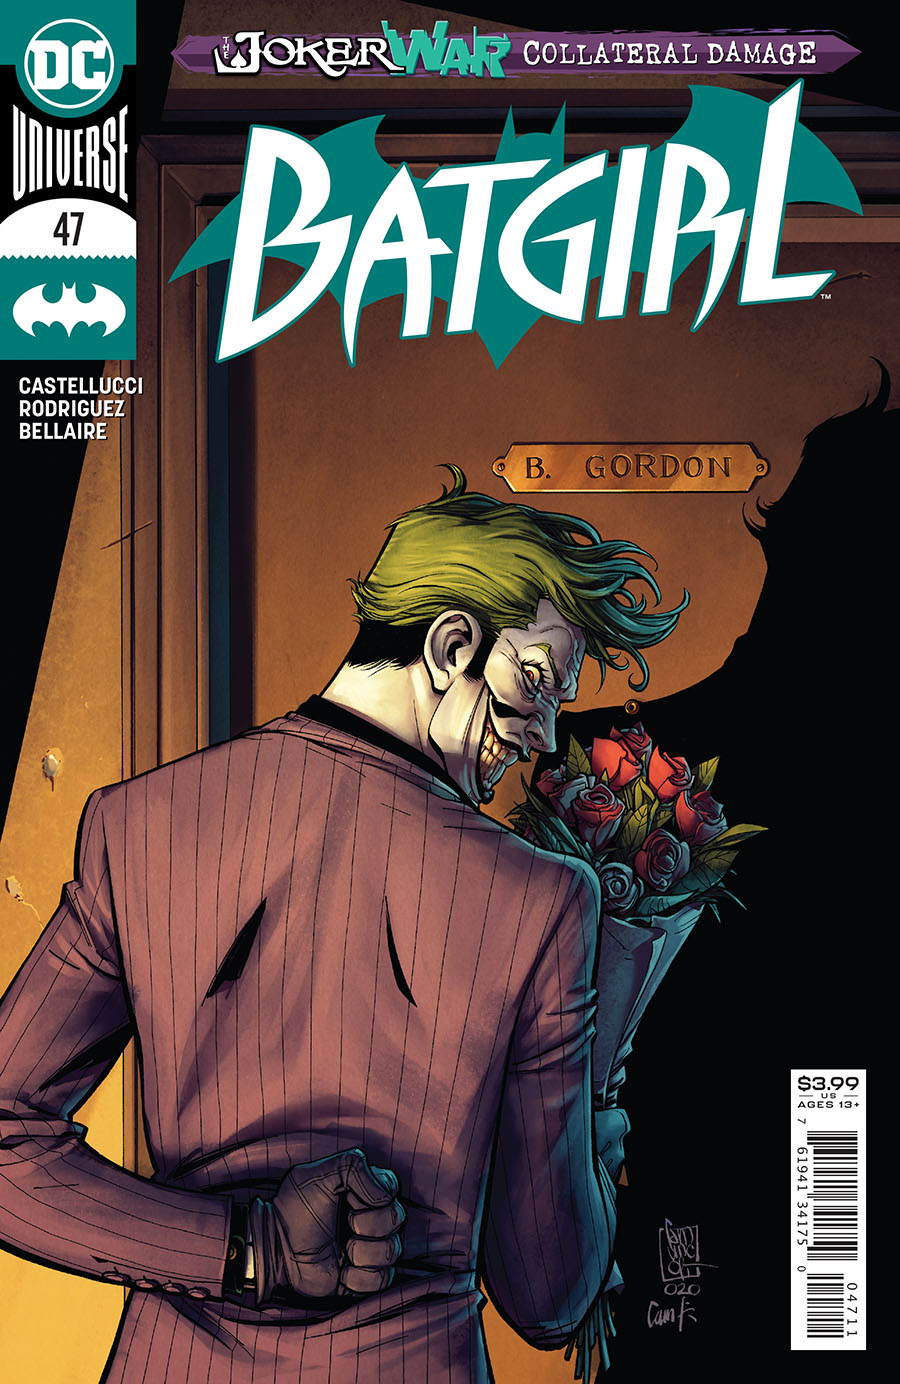 Batgirl Vol 5 #47 Cover A Regular Giuseppe Camuncoli Cover (Joker War Tie-In)